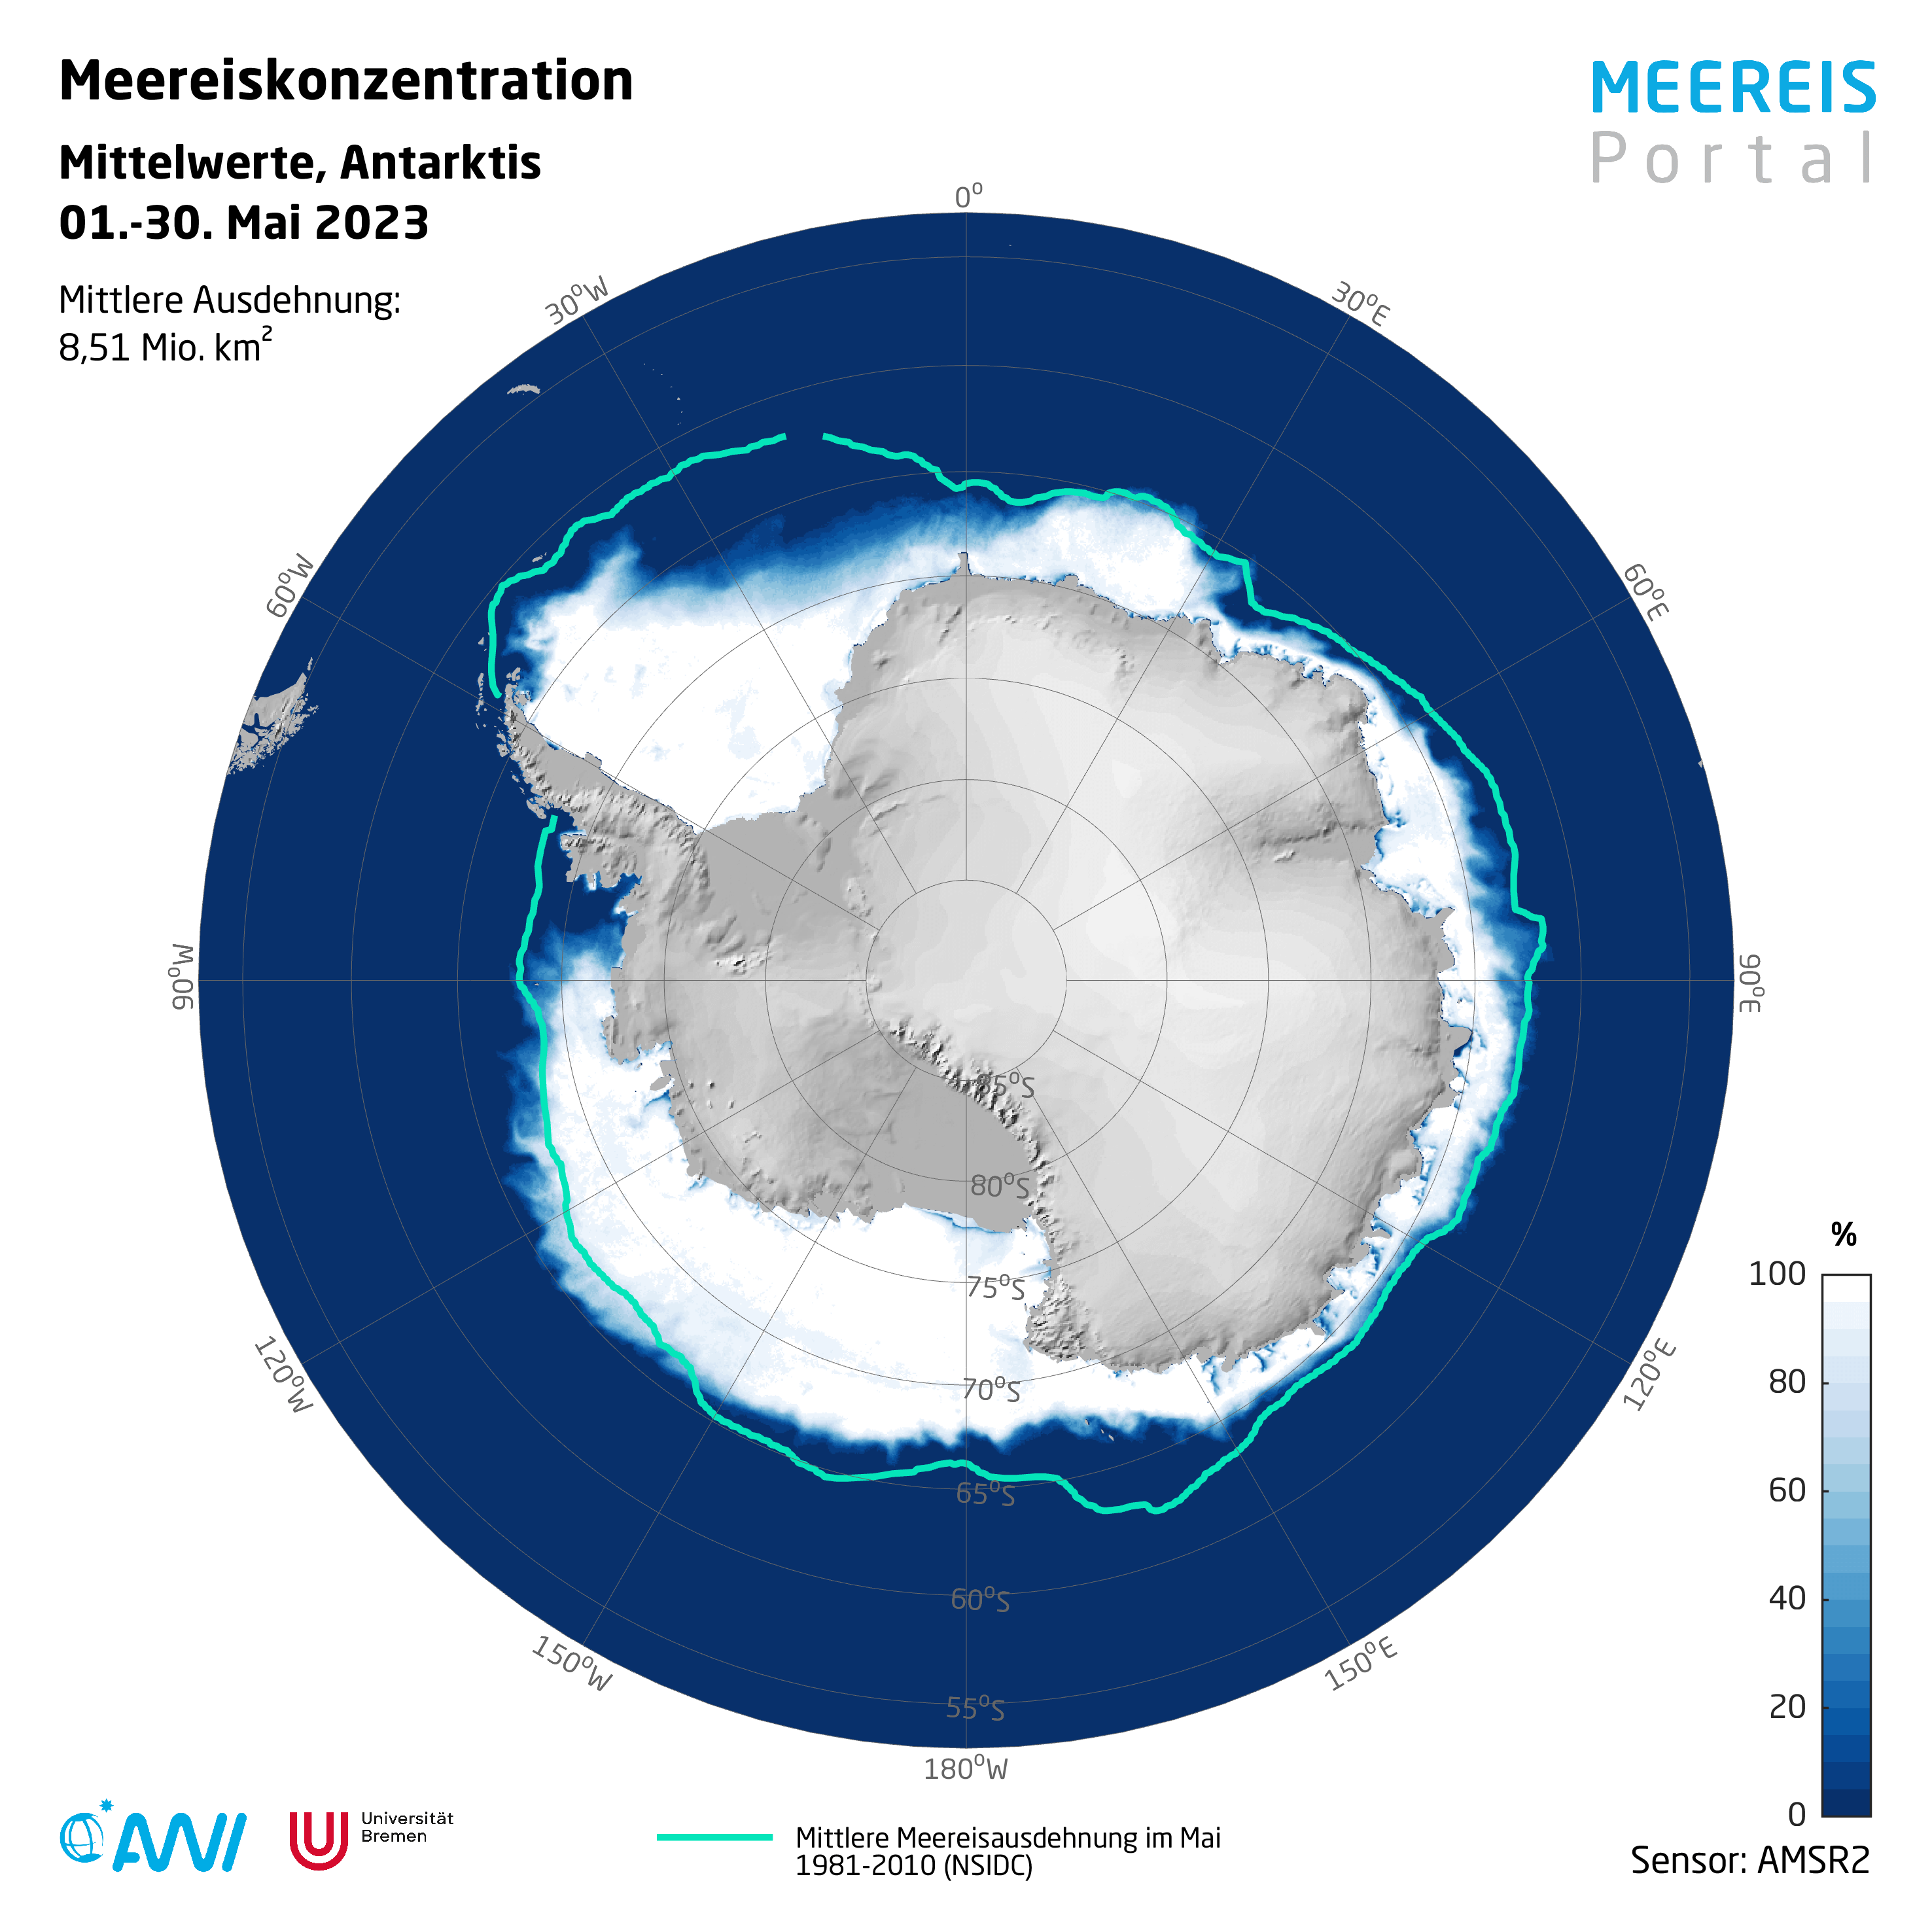 Kälterekord und trotzdem wenig Eis: antarktischer Eisschild im Mai